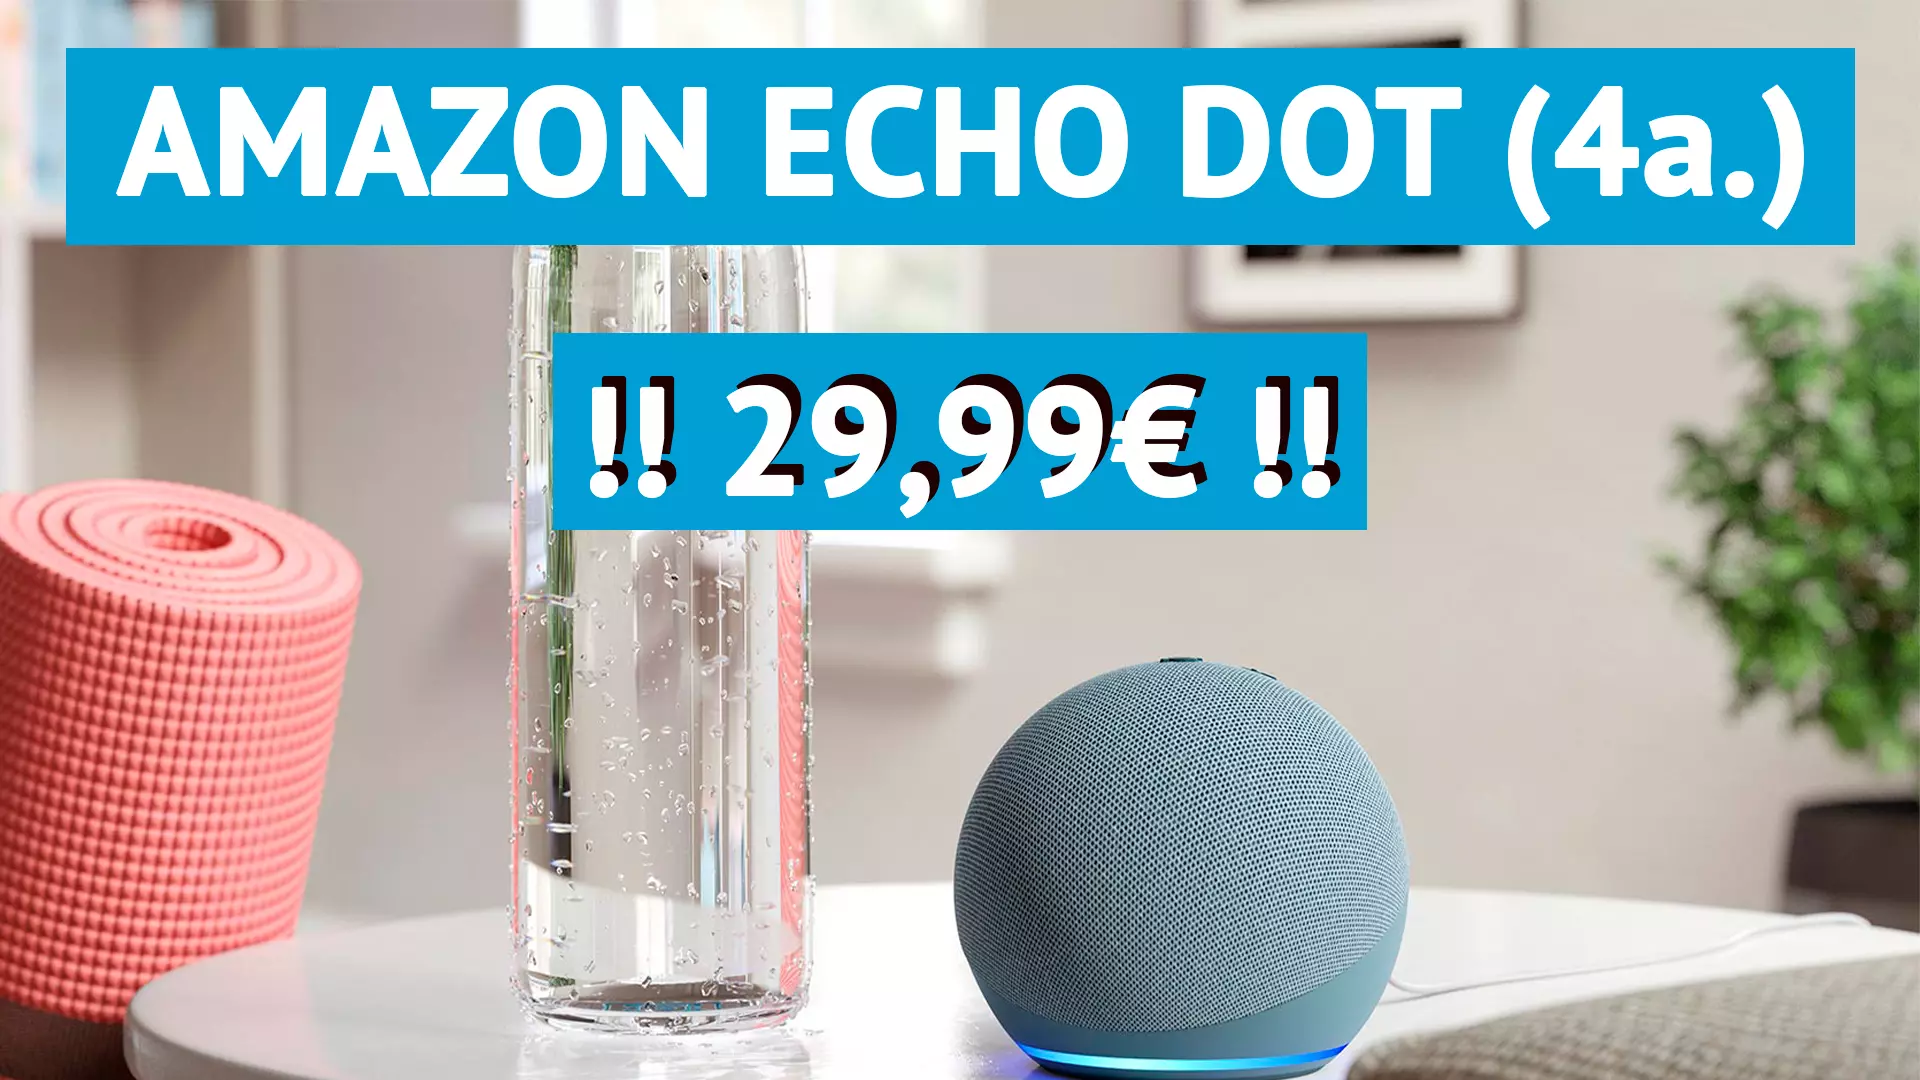 Amazon Echo Dot a precio irresistible de 29.99€ con nueva oferta especial de Amazon